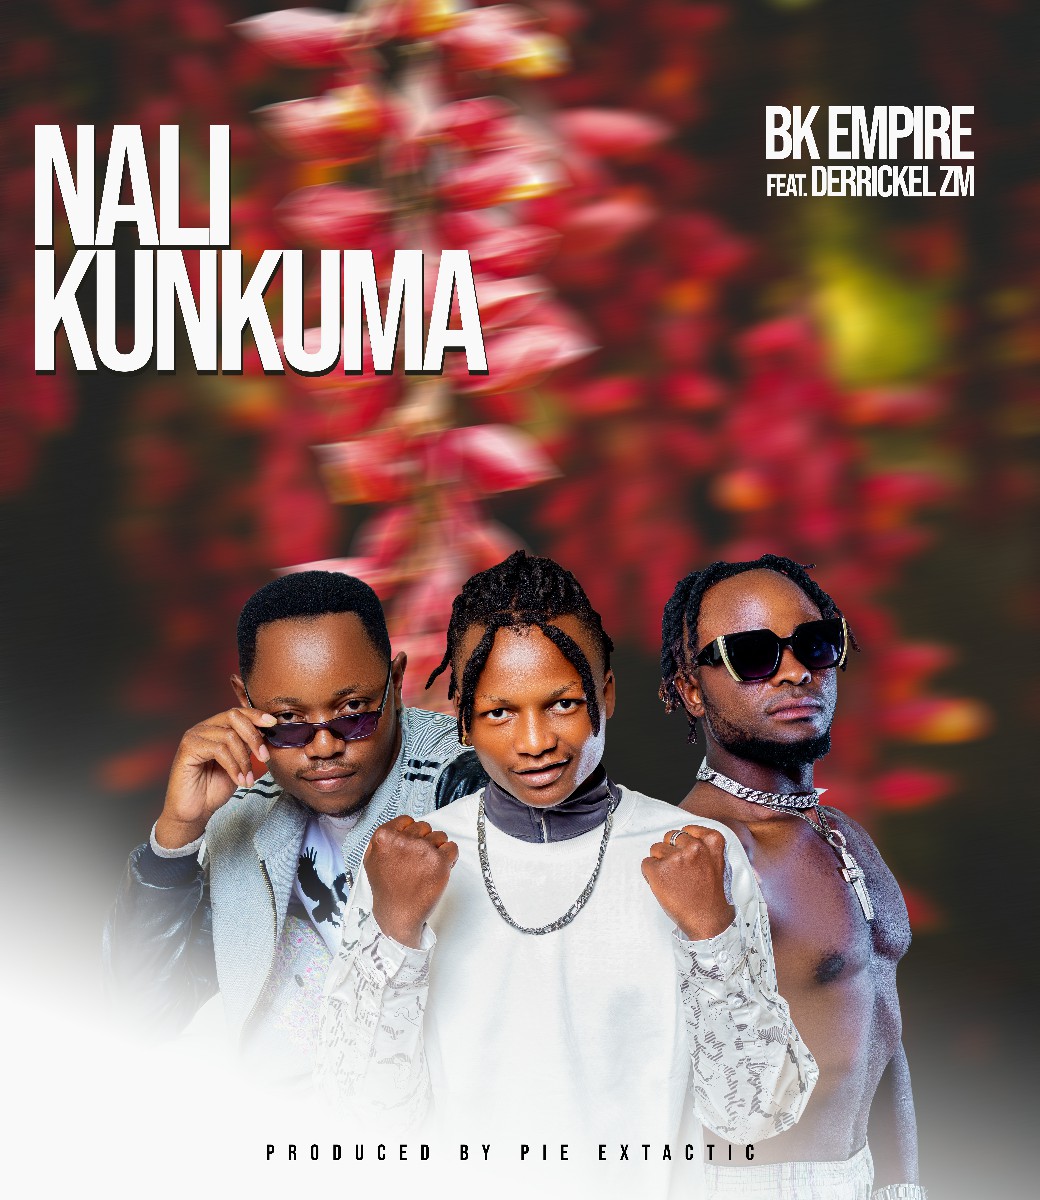 BK Empire ft. Derrickel ZM - Nalikunkuma